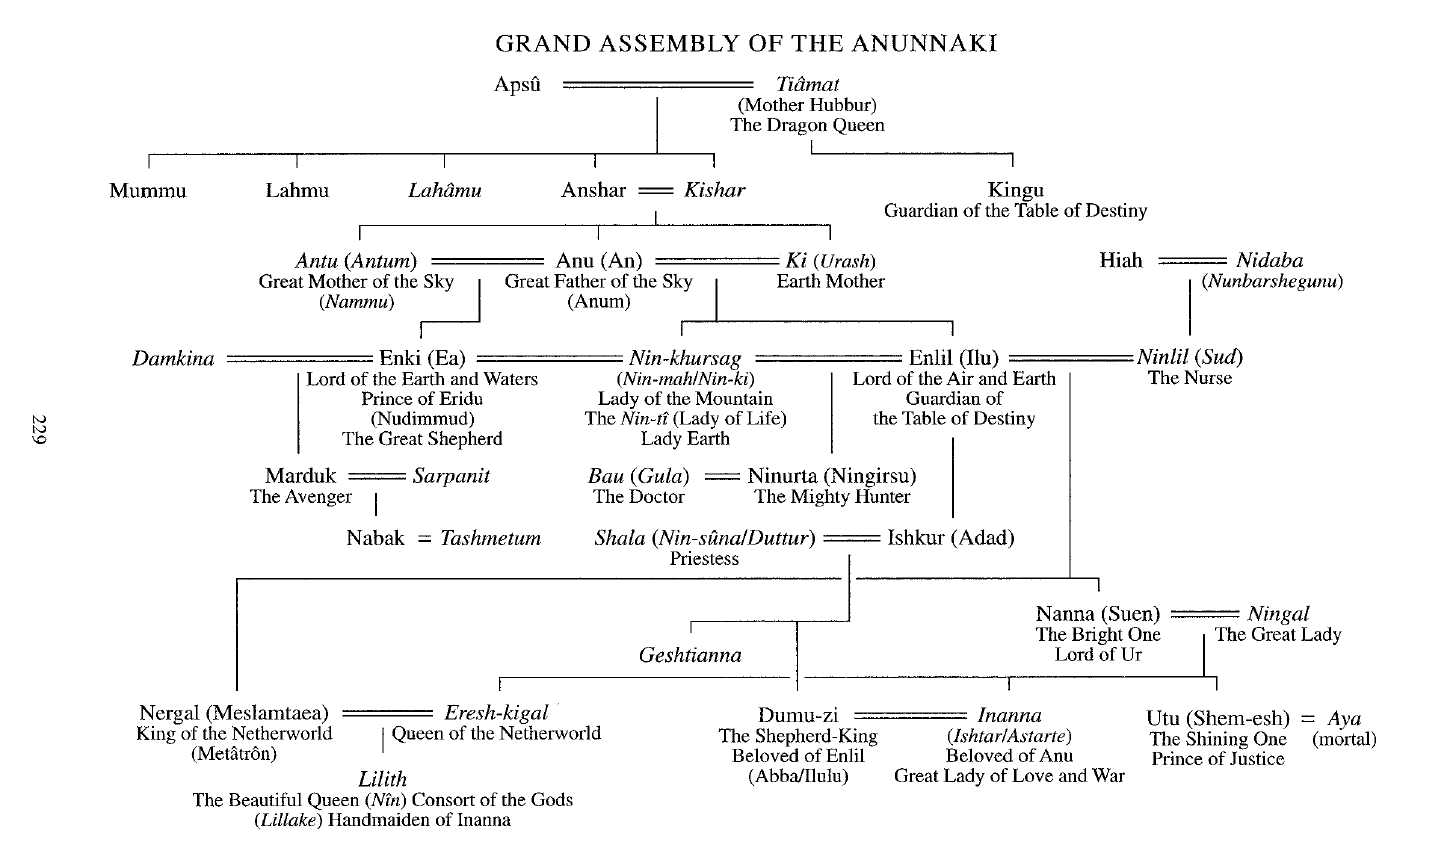 Grand Assembly of the Anunnaki